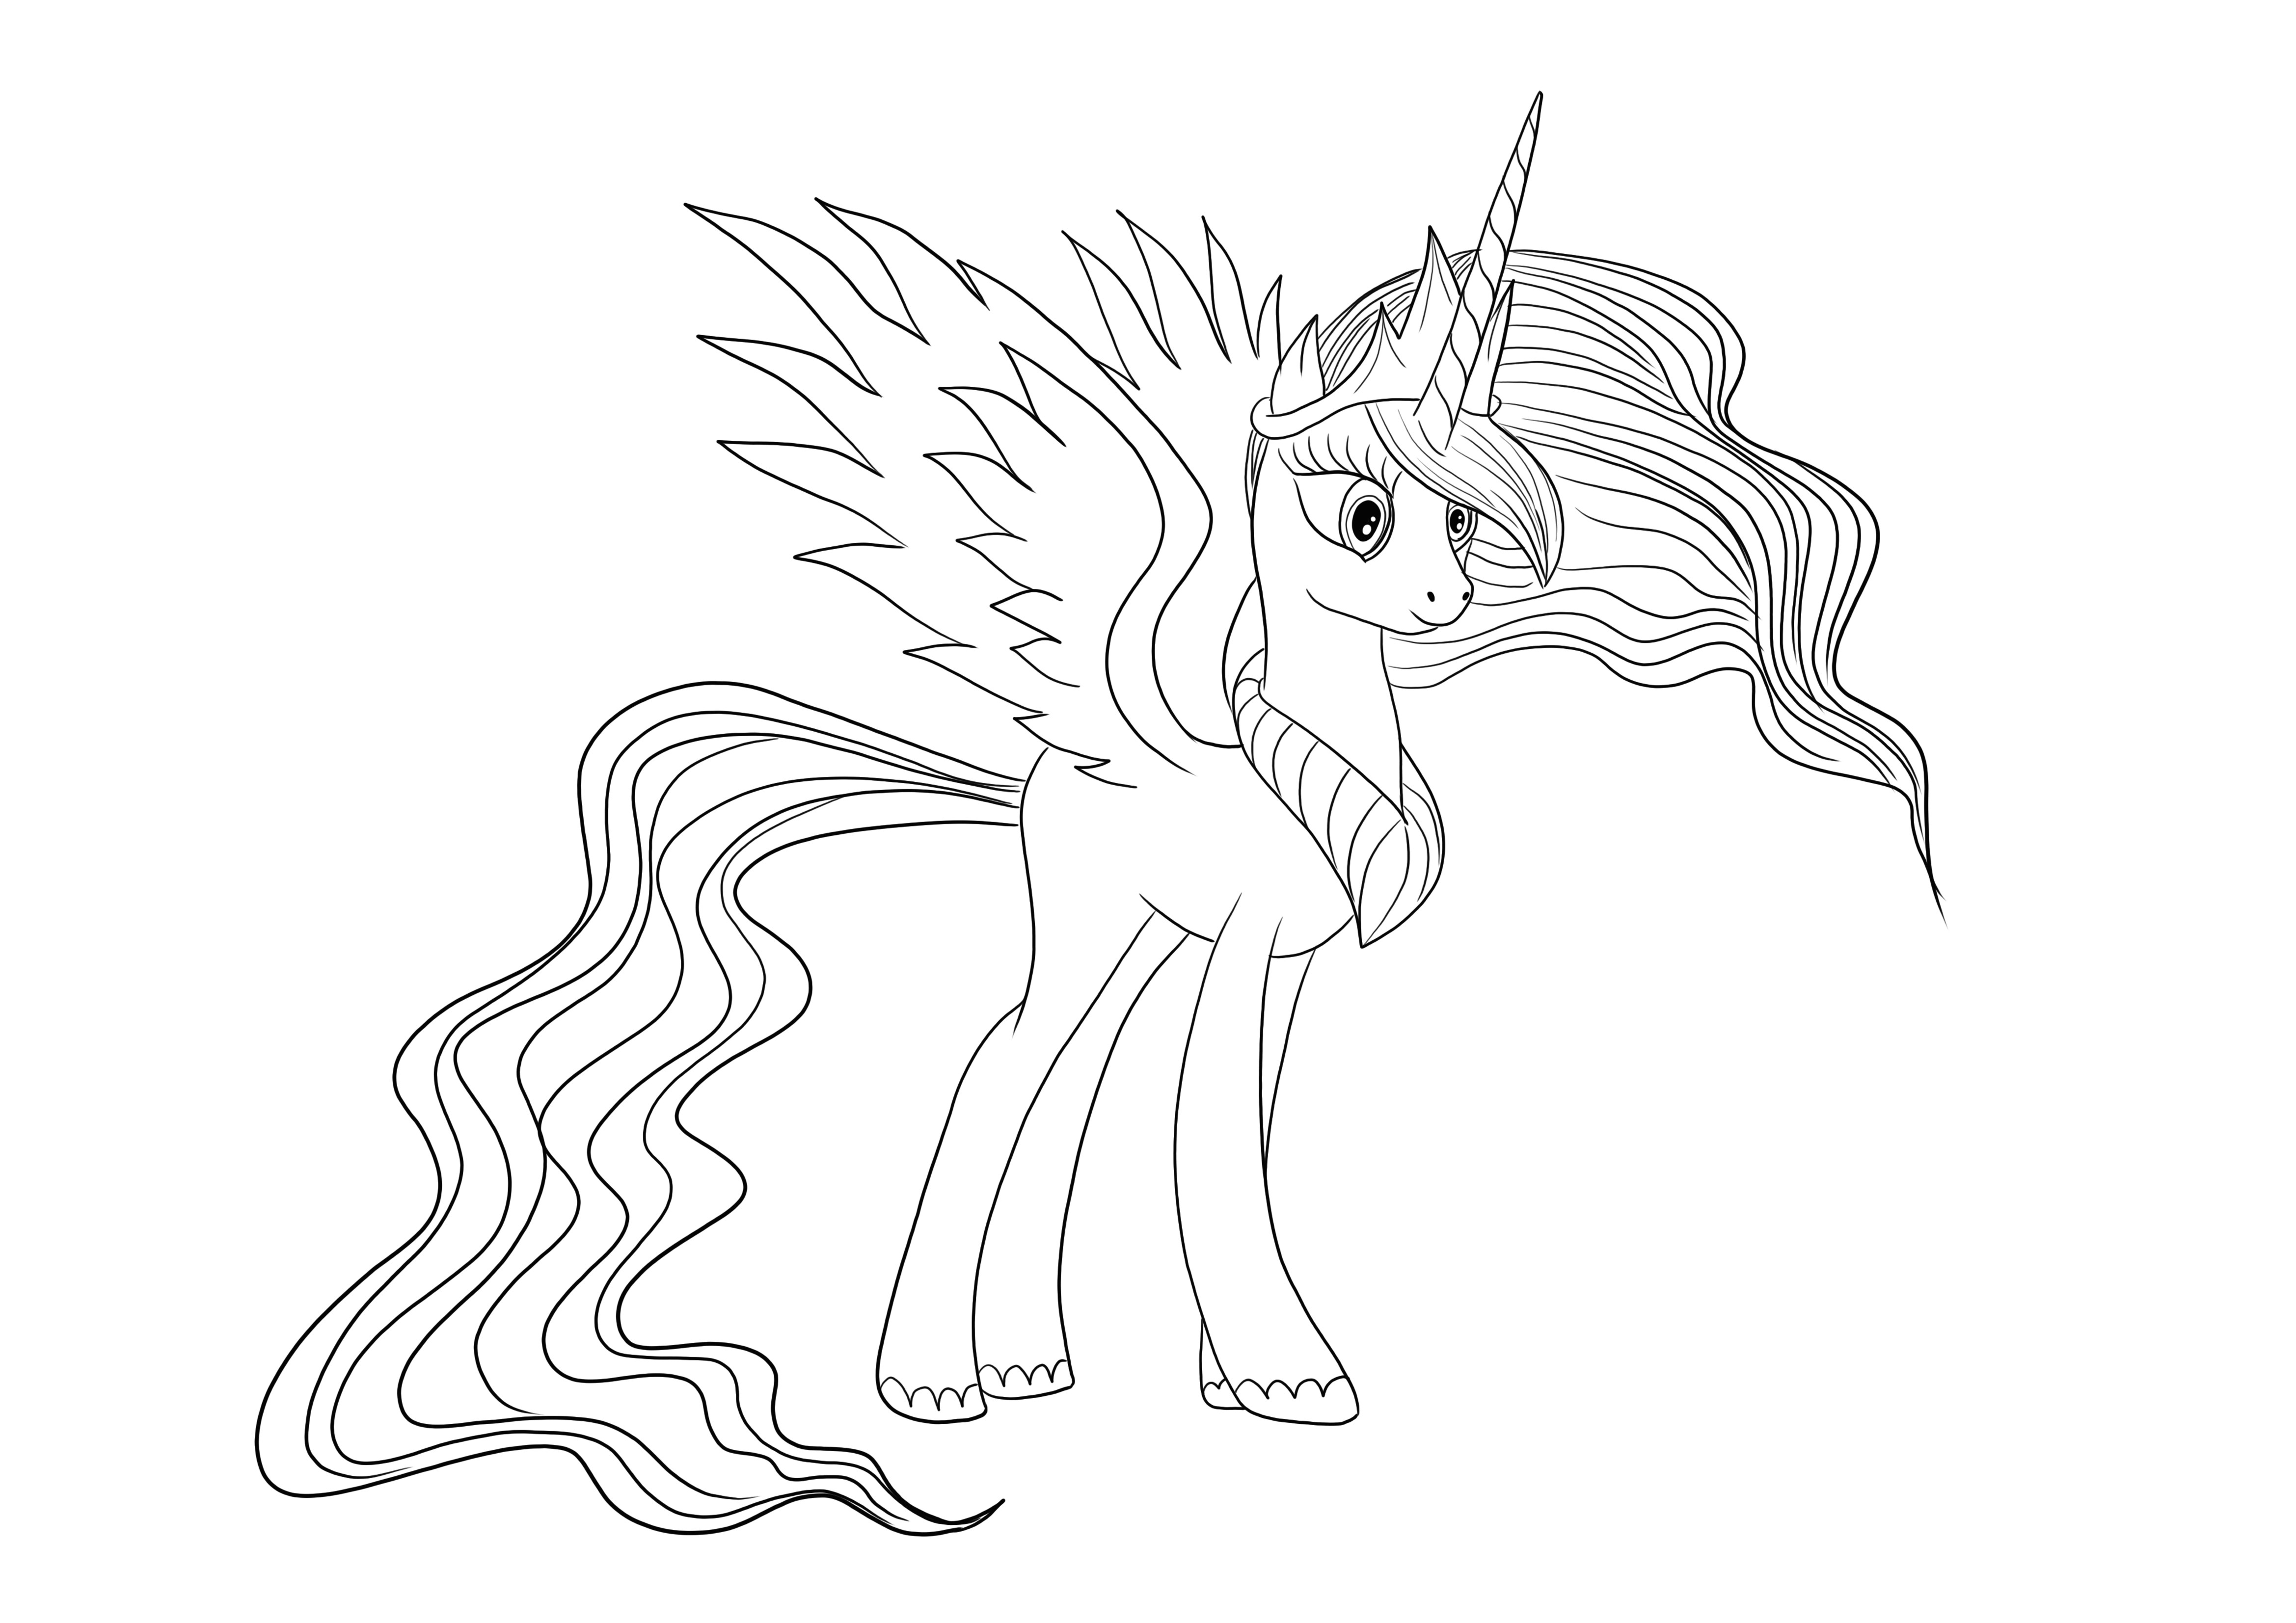 Gracious Princess Celestia de la Little Pony pentru a descărca gratuit și imaginea color